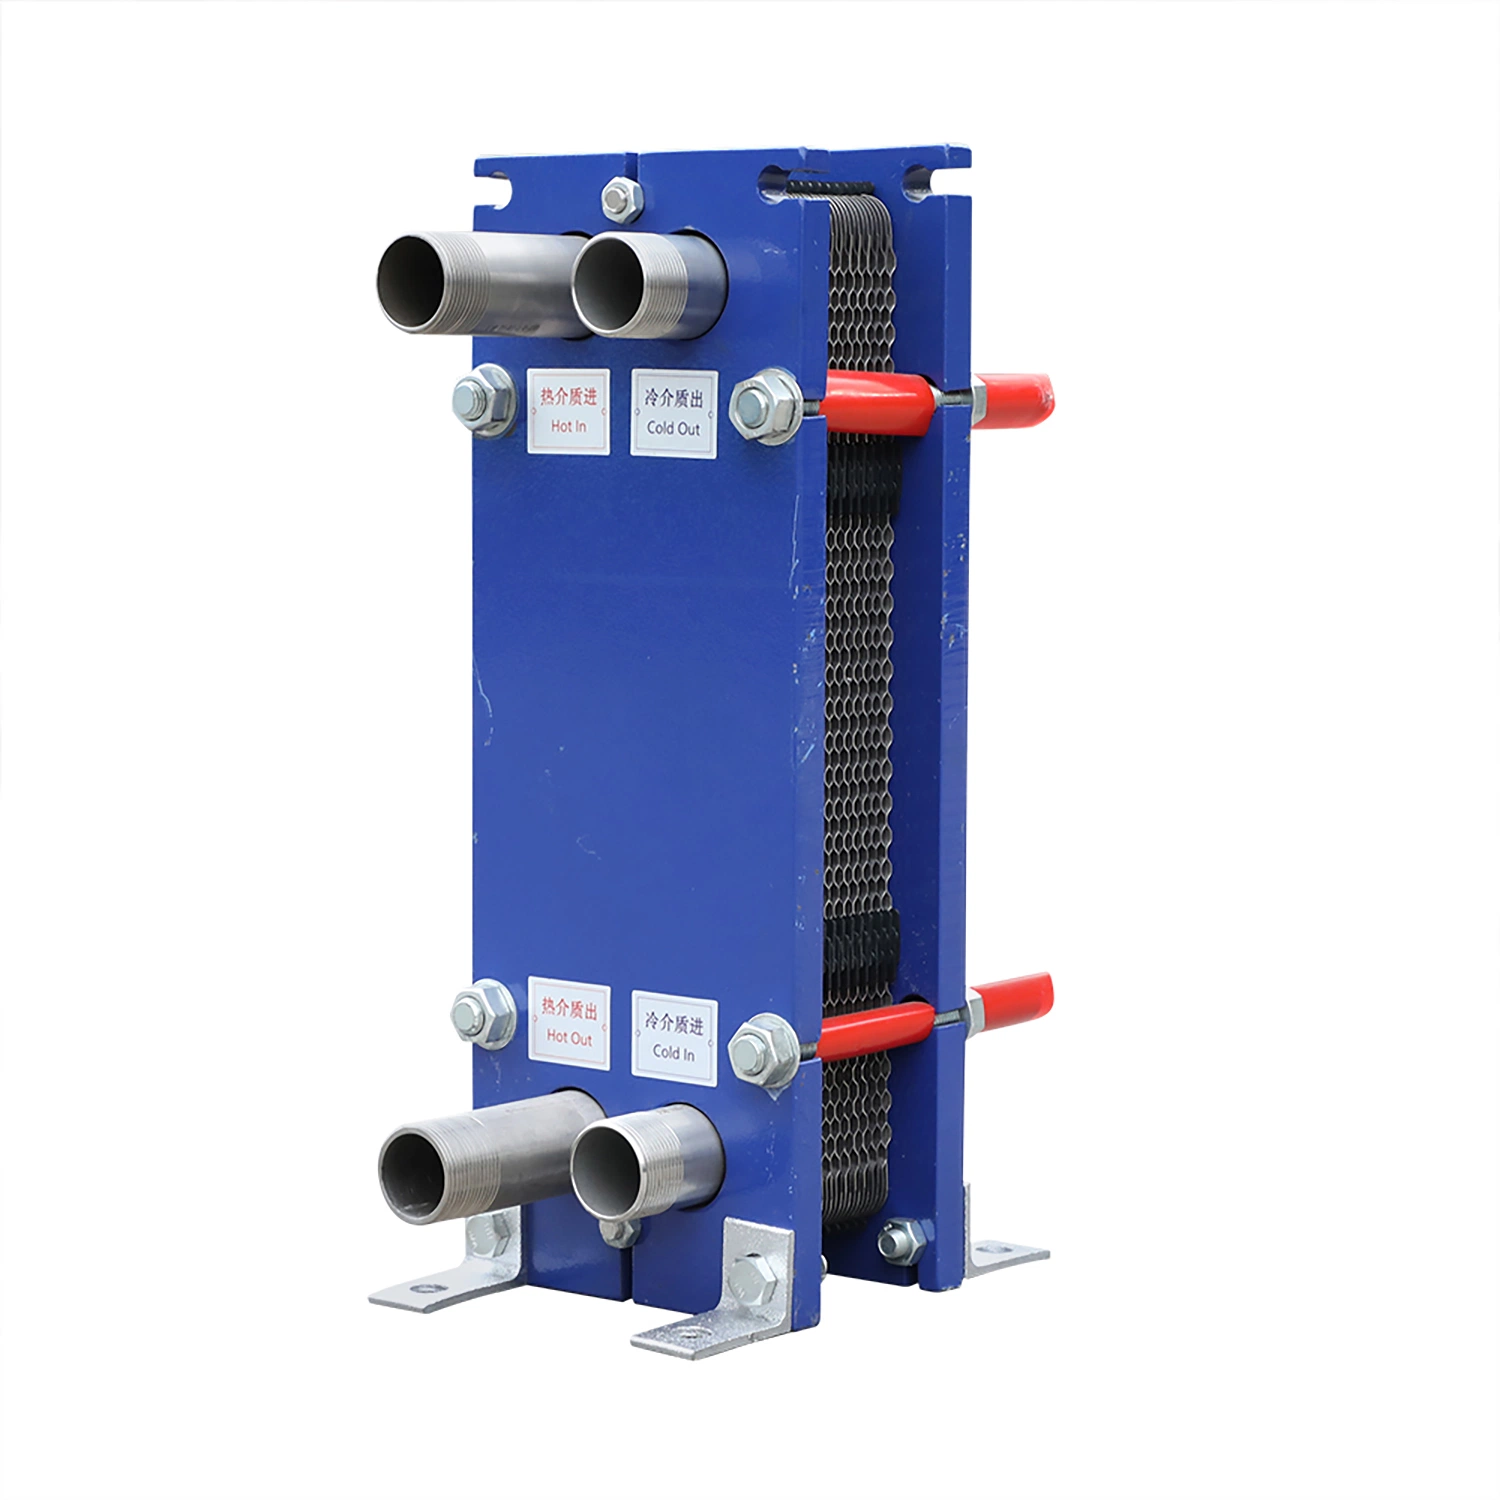 Effiziente Plattenwärmetauscher-Systeme für die Wasserheizung